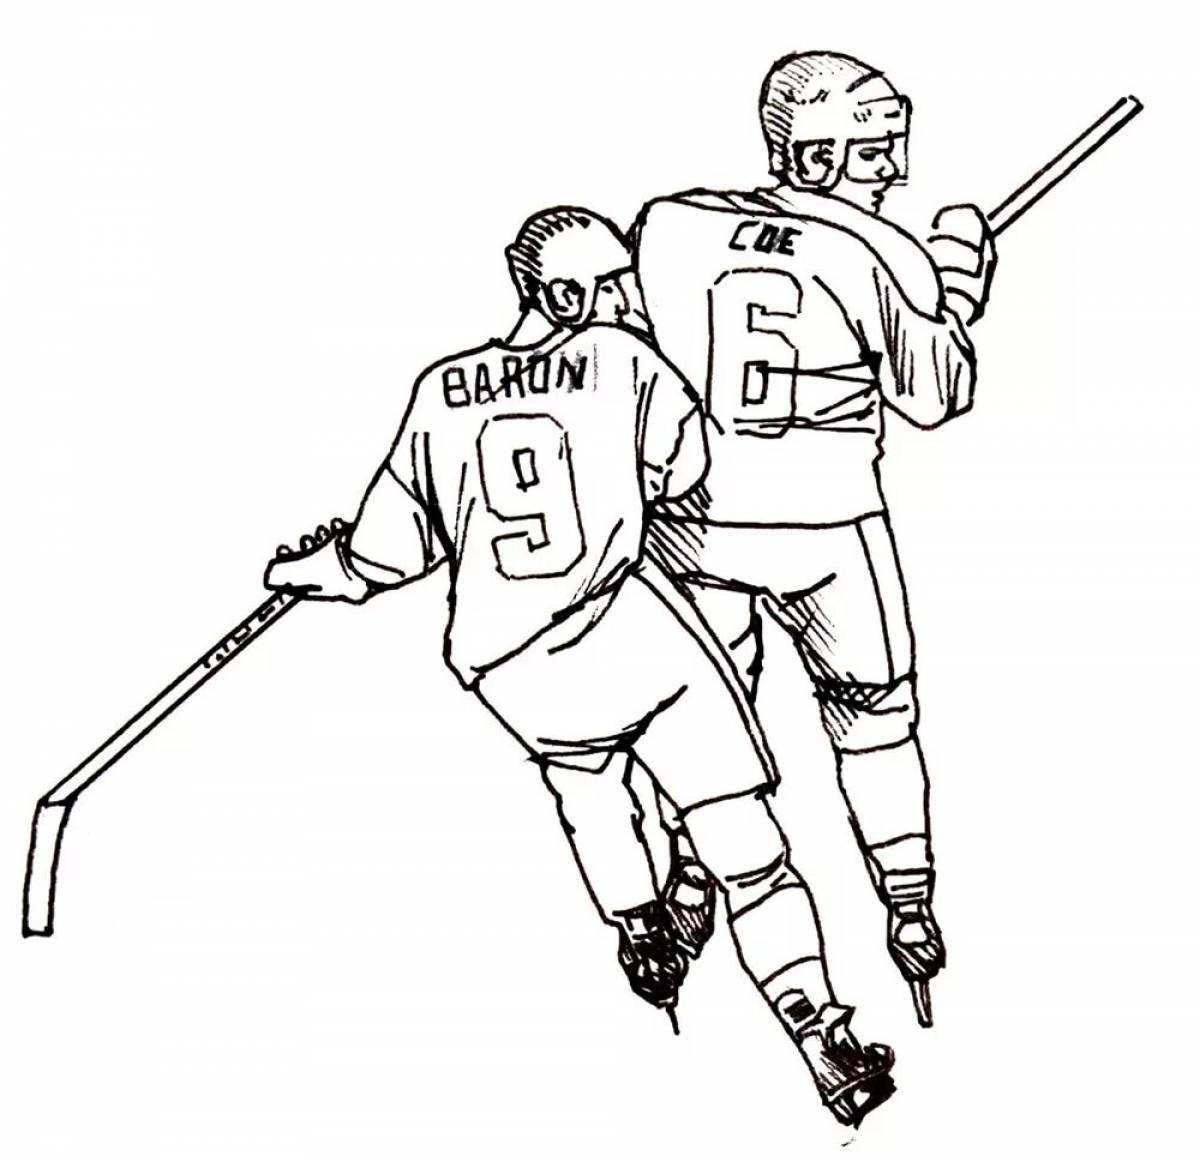 Hockey #7